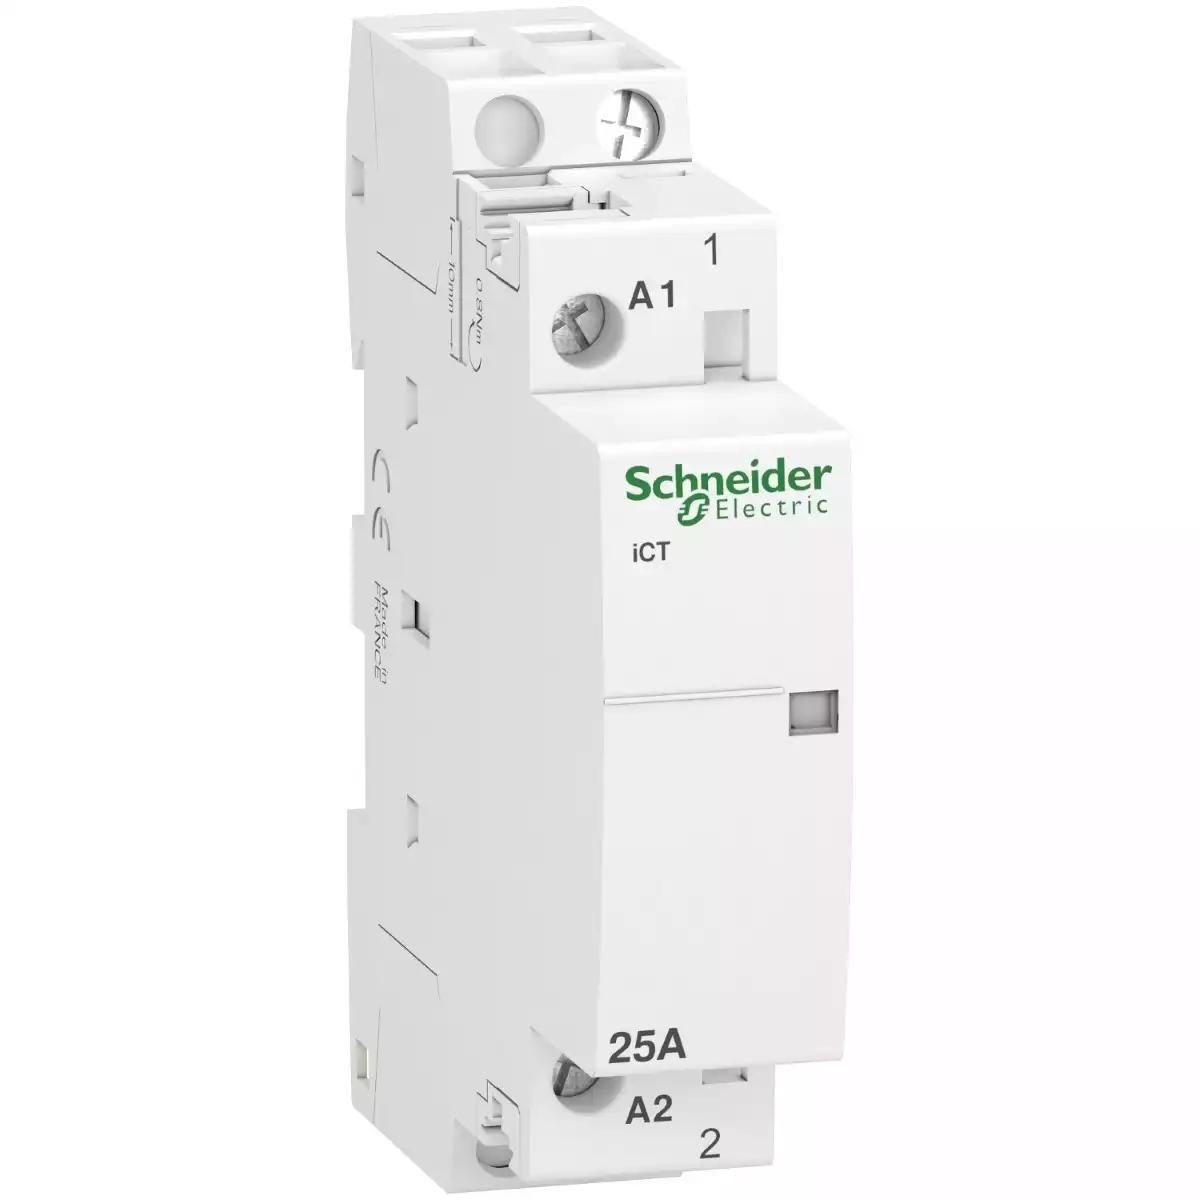 Schneider Electric Acti 9 iCT 25A 1NO 230...240V 50Hz contactor